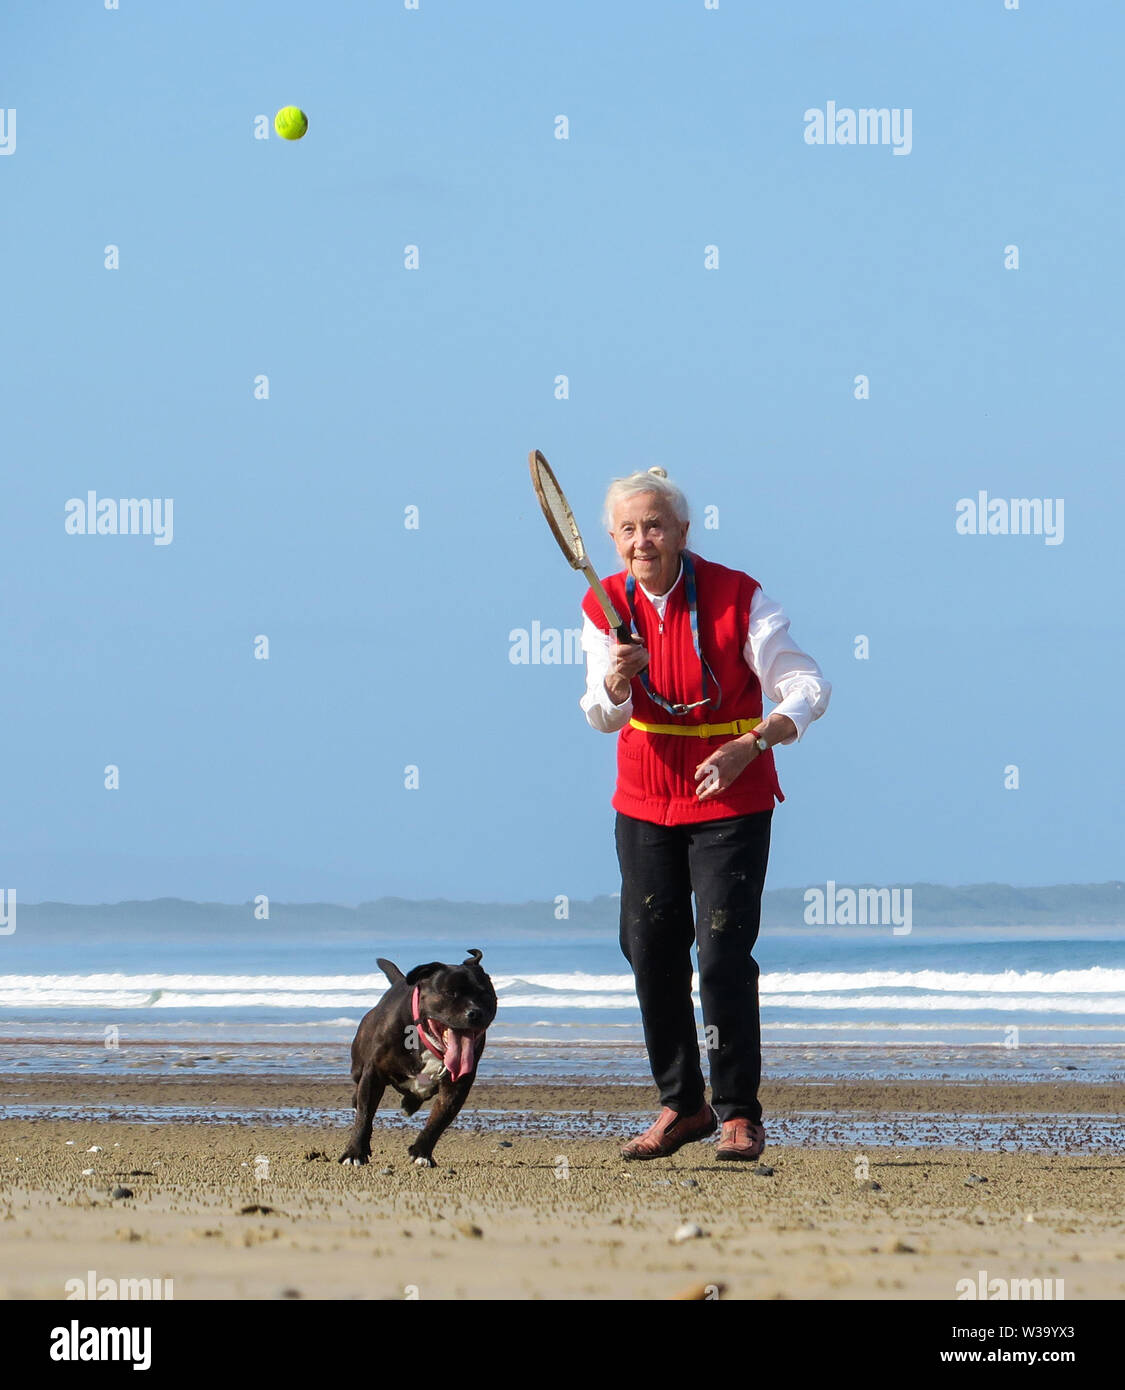 La diversión en la playa, como una mujer anciana golpea una pelota de tenis para su perro a chase en la arena. Foto de stock